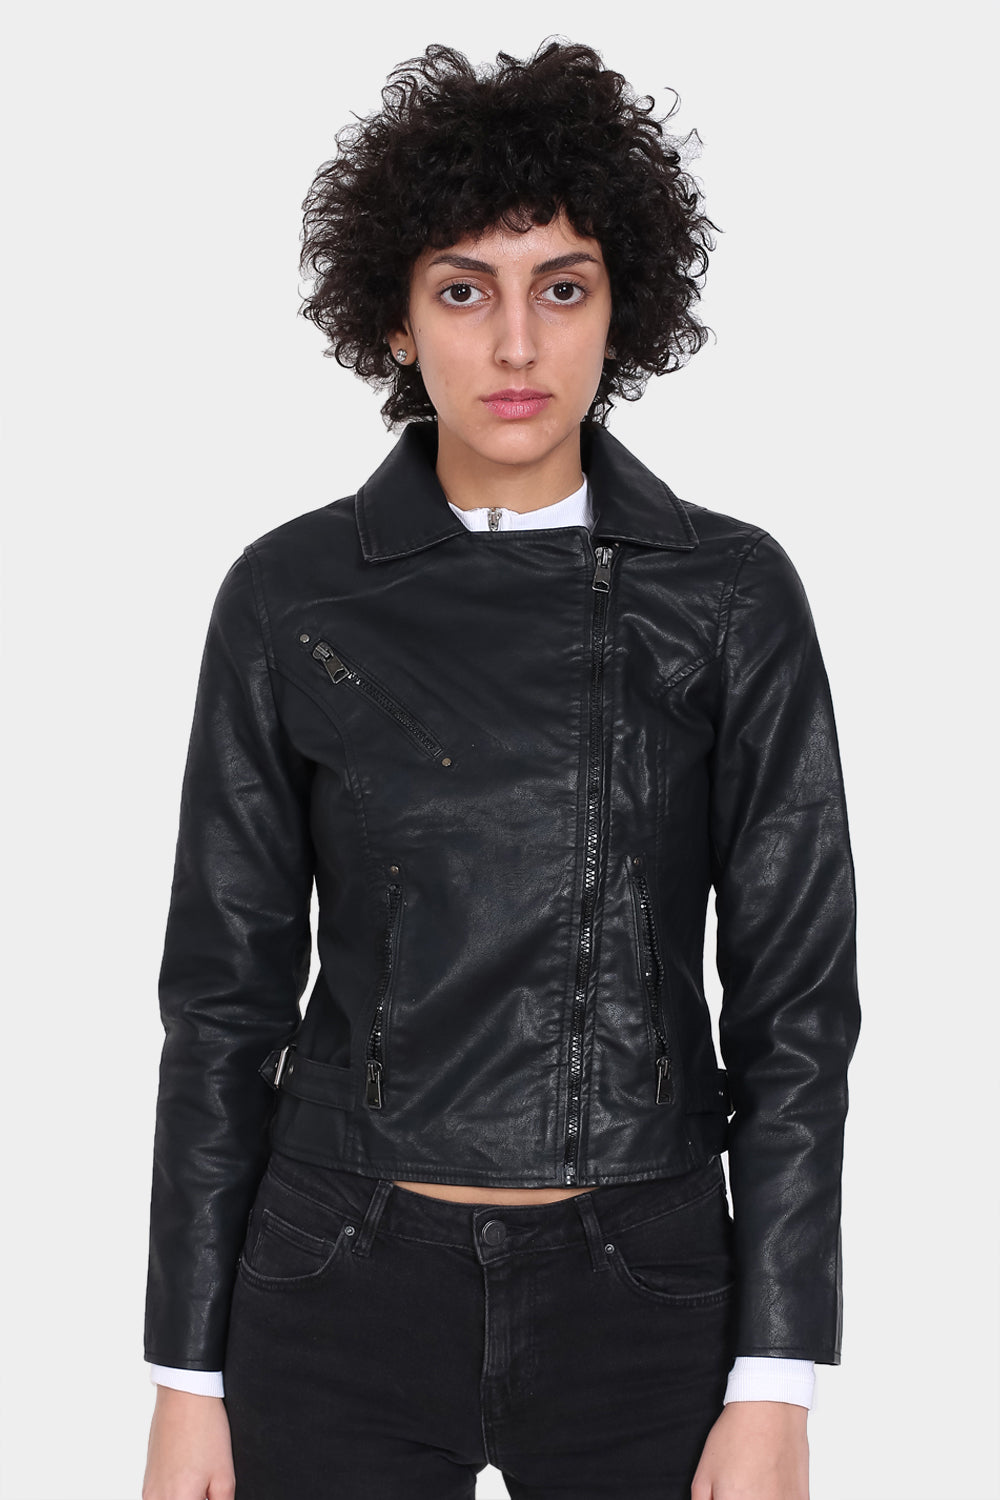 Justanned Pitch-Dark Women Leather Jacket